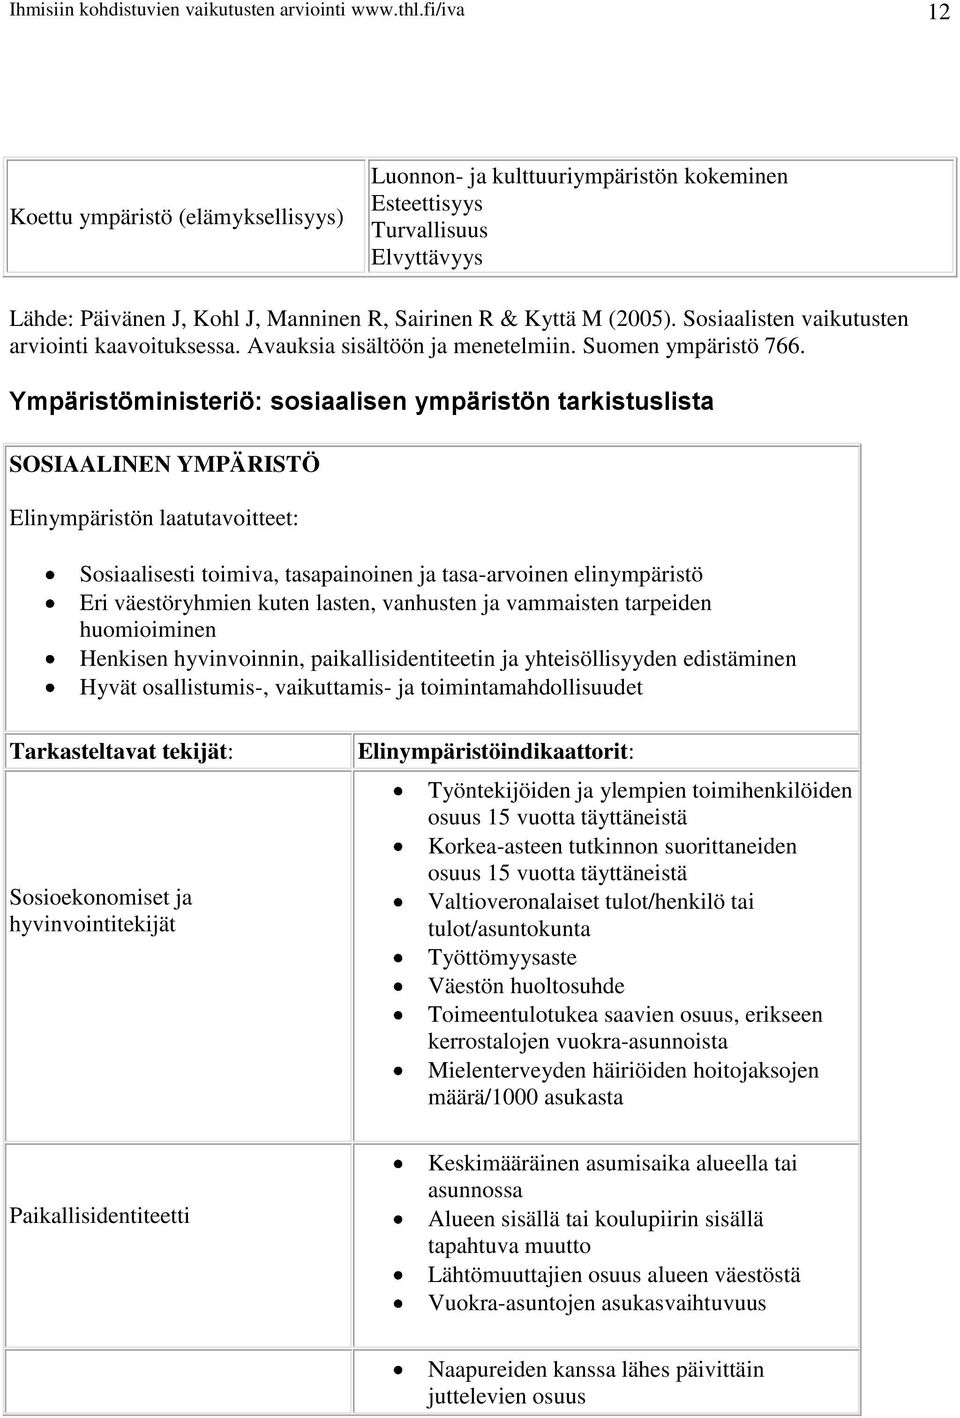 Sosiaalisten vaikutusten arviointi kaavoituksessa. Avauksia sisältöön ja menetelmiin. Suomen ympäristö 766.